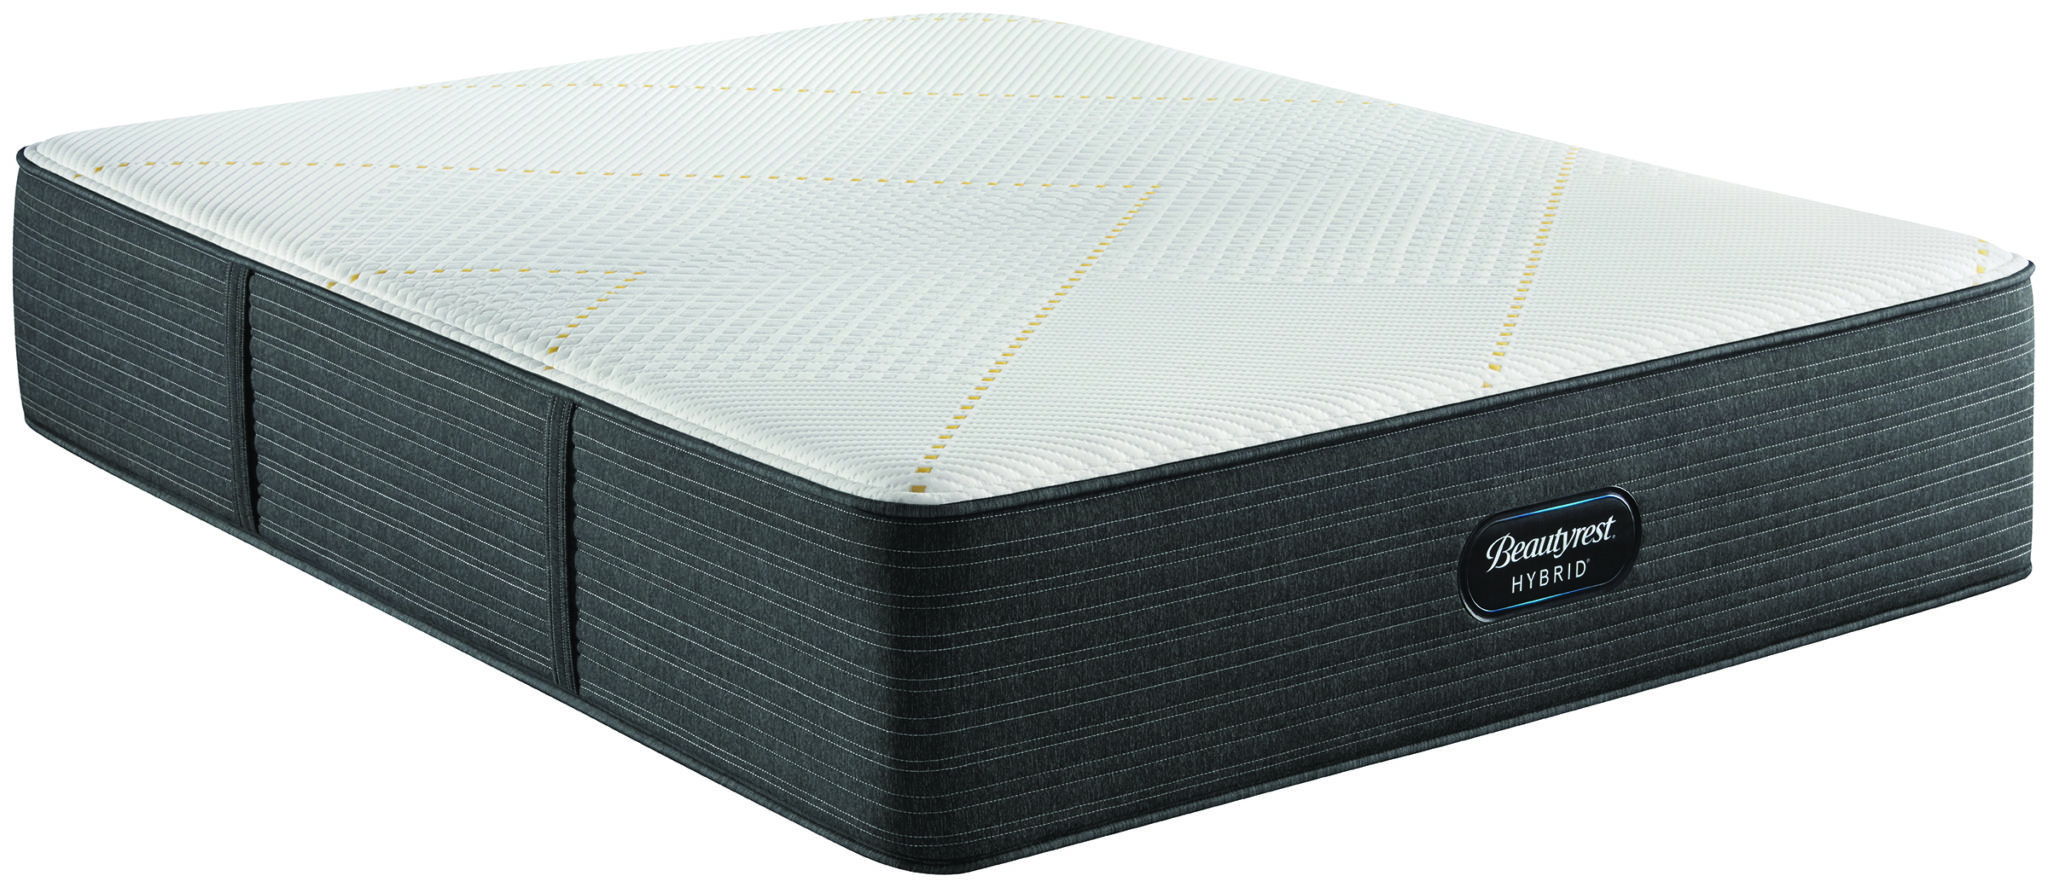 beautyrest black hybrid x-class medium mattress